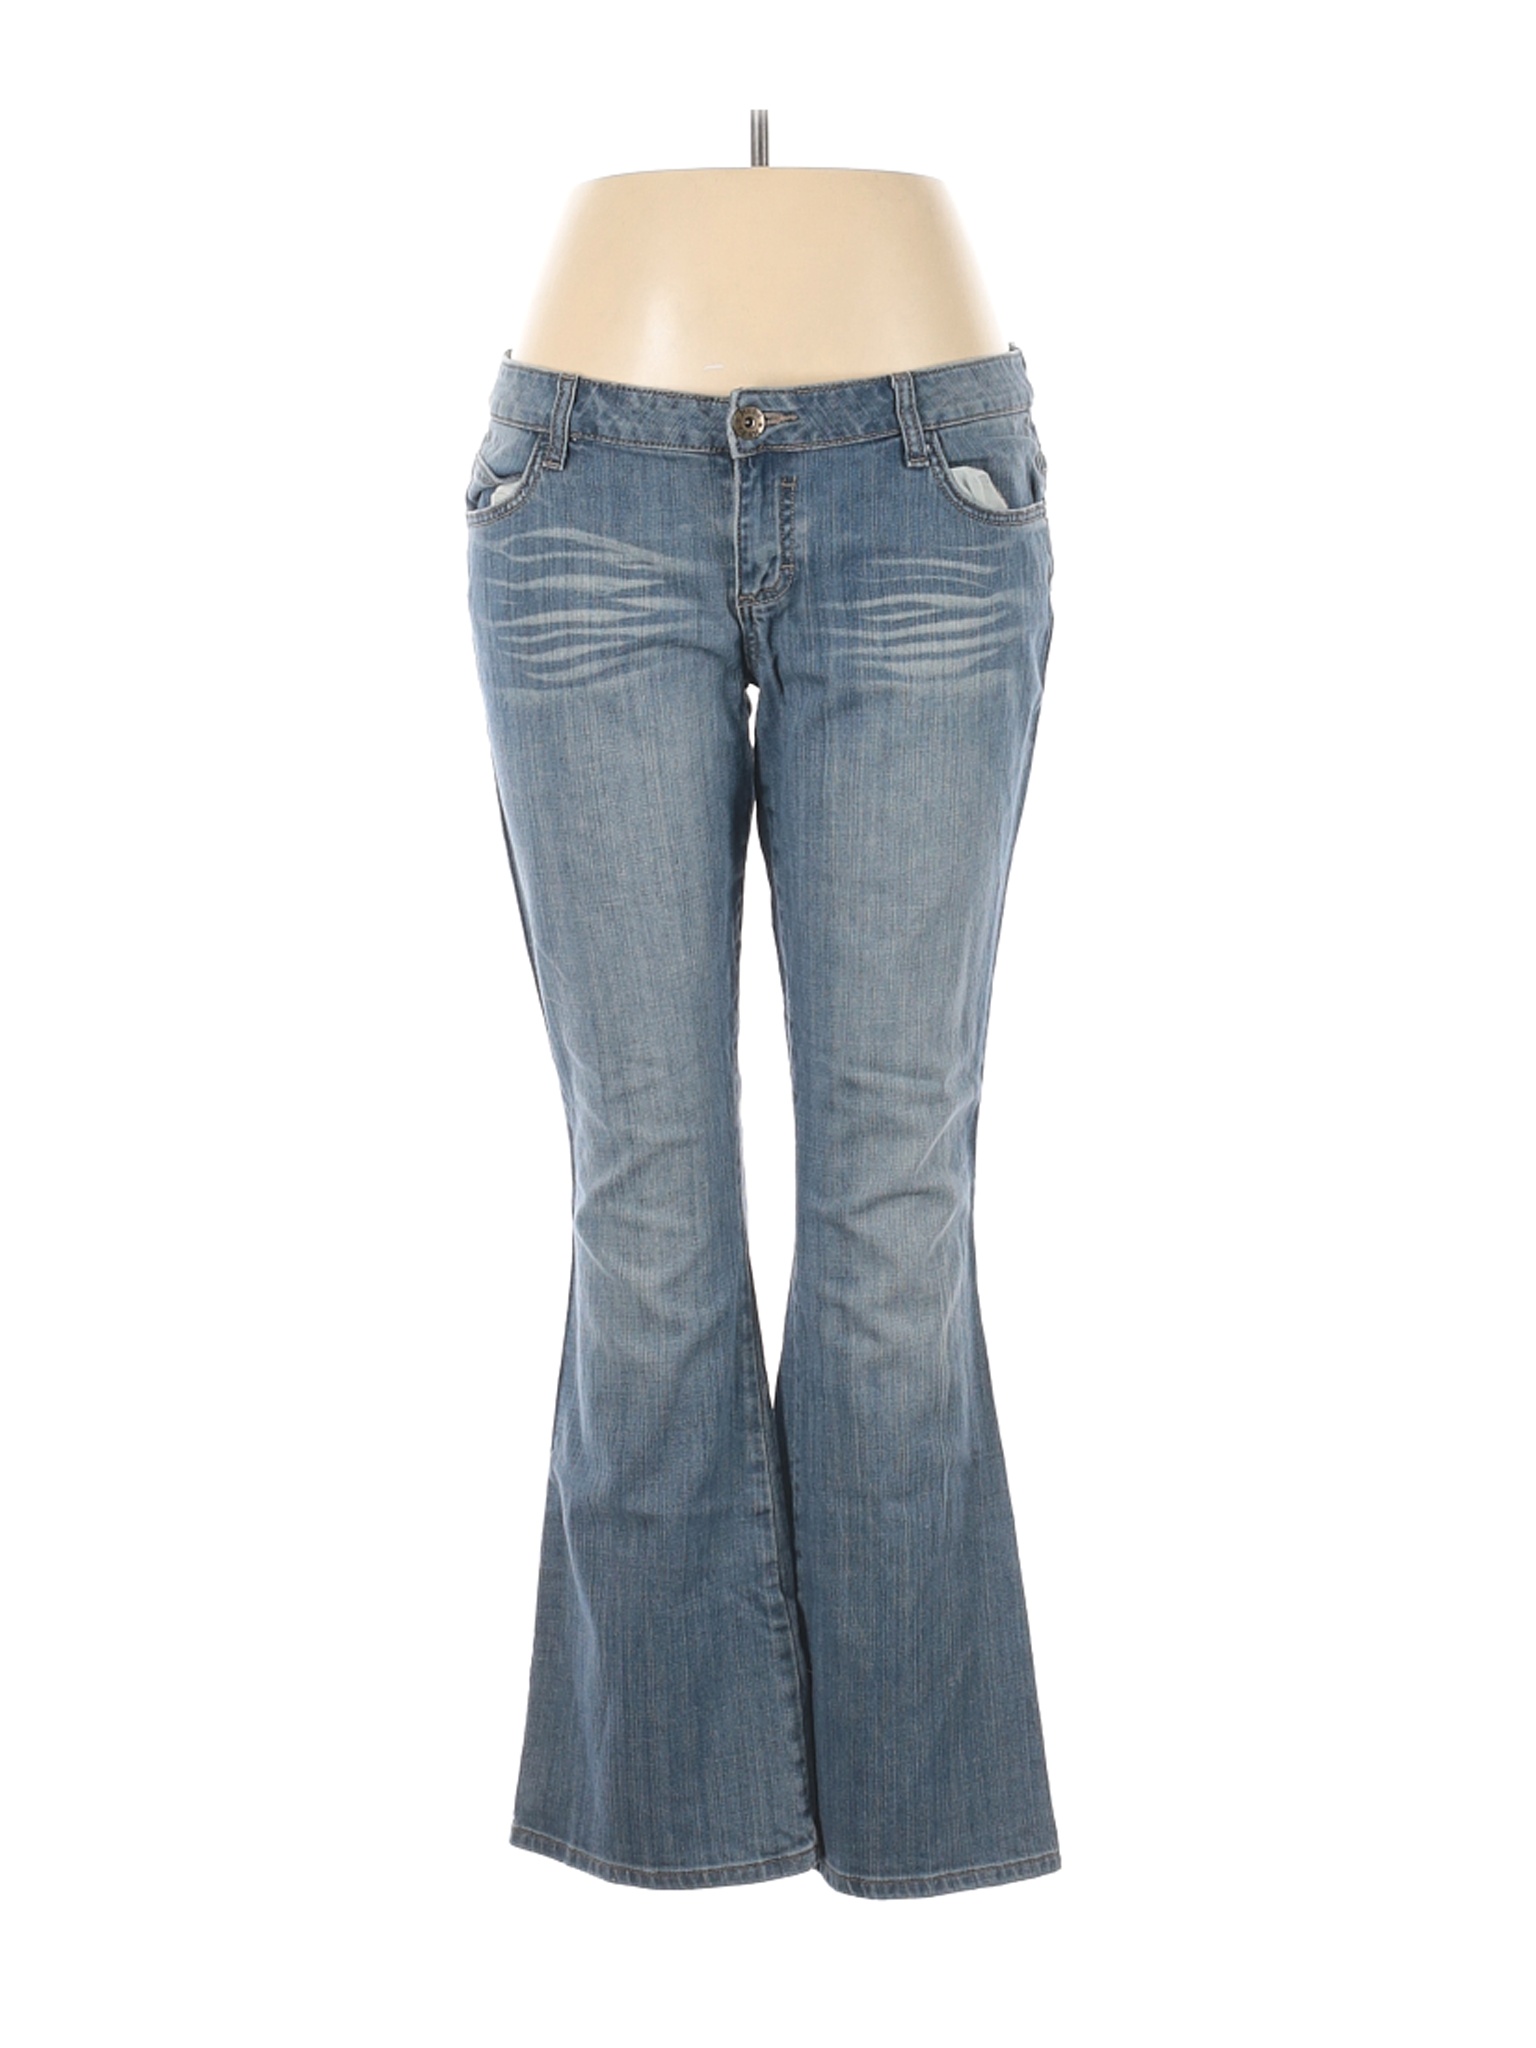 Mudd Women Blue Jeans 15 | eBay